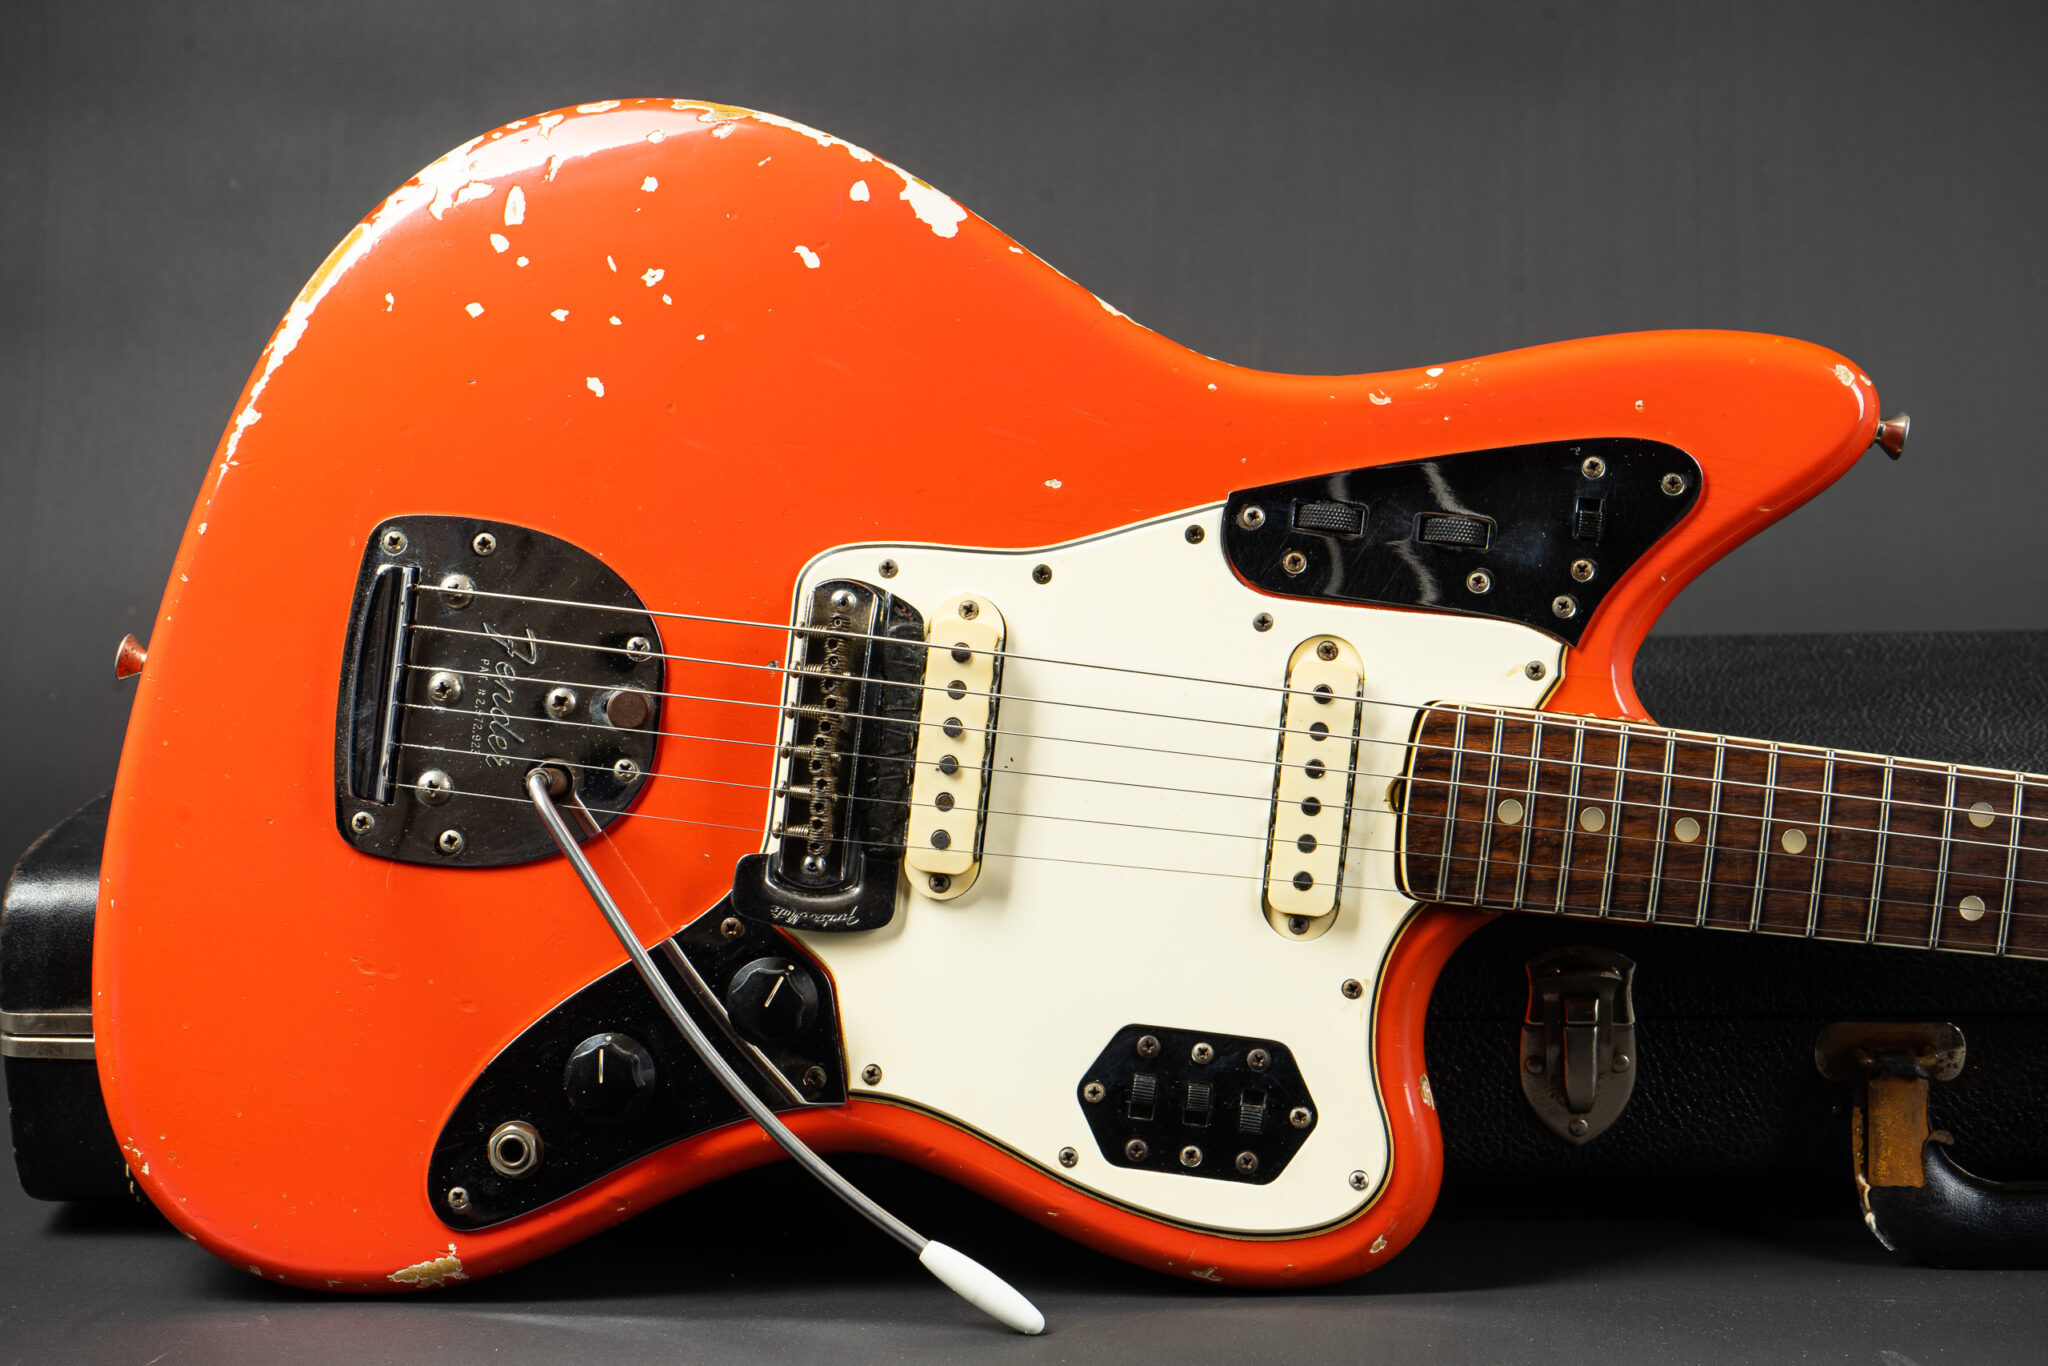 https://guitarpoint.de/app/uploads/products/1965-fender-jaguar-fiesta-red/1965-Fender-Jaguar-Fiesta-Red-L65074-9-2048x1366.jpg